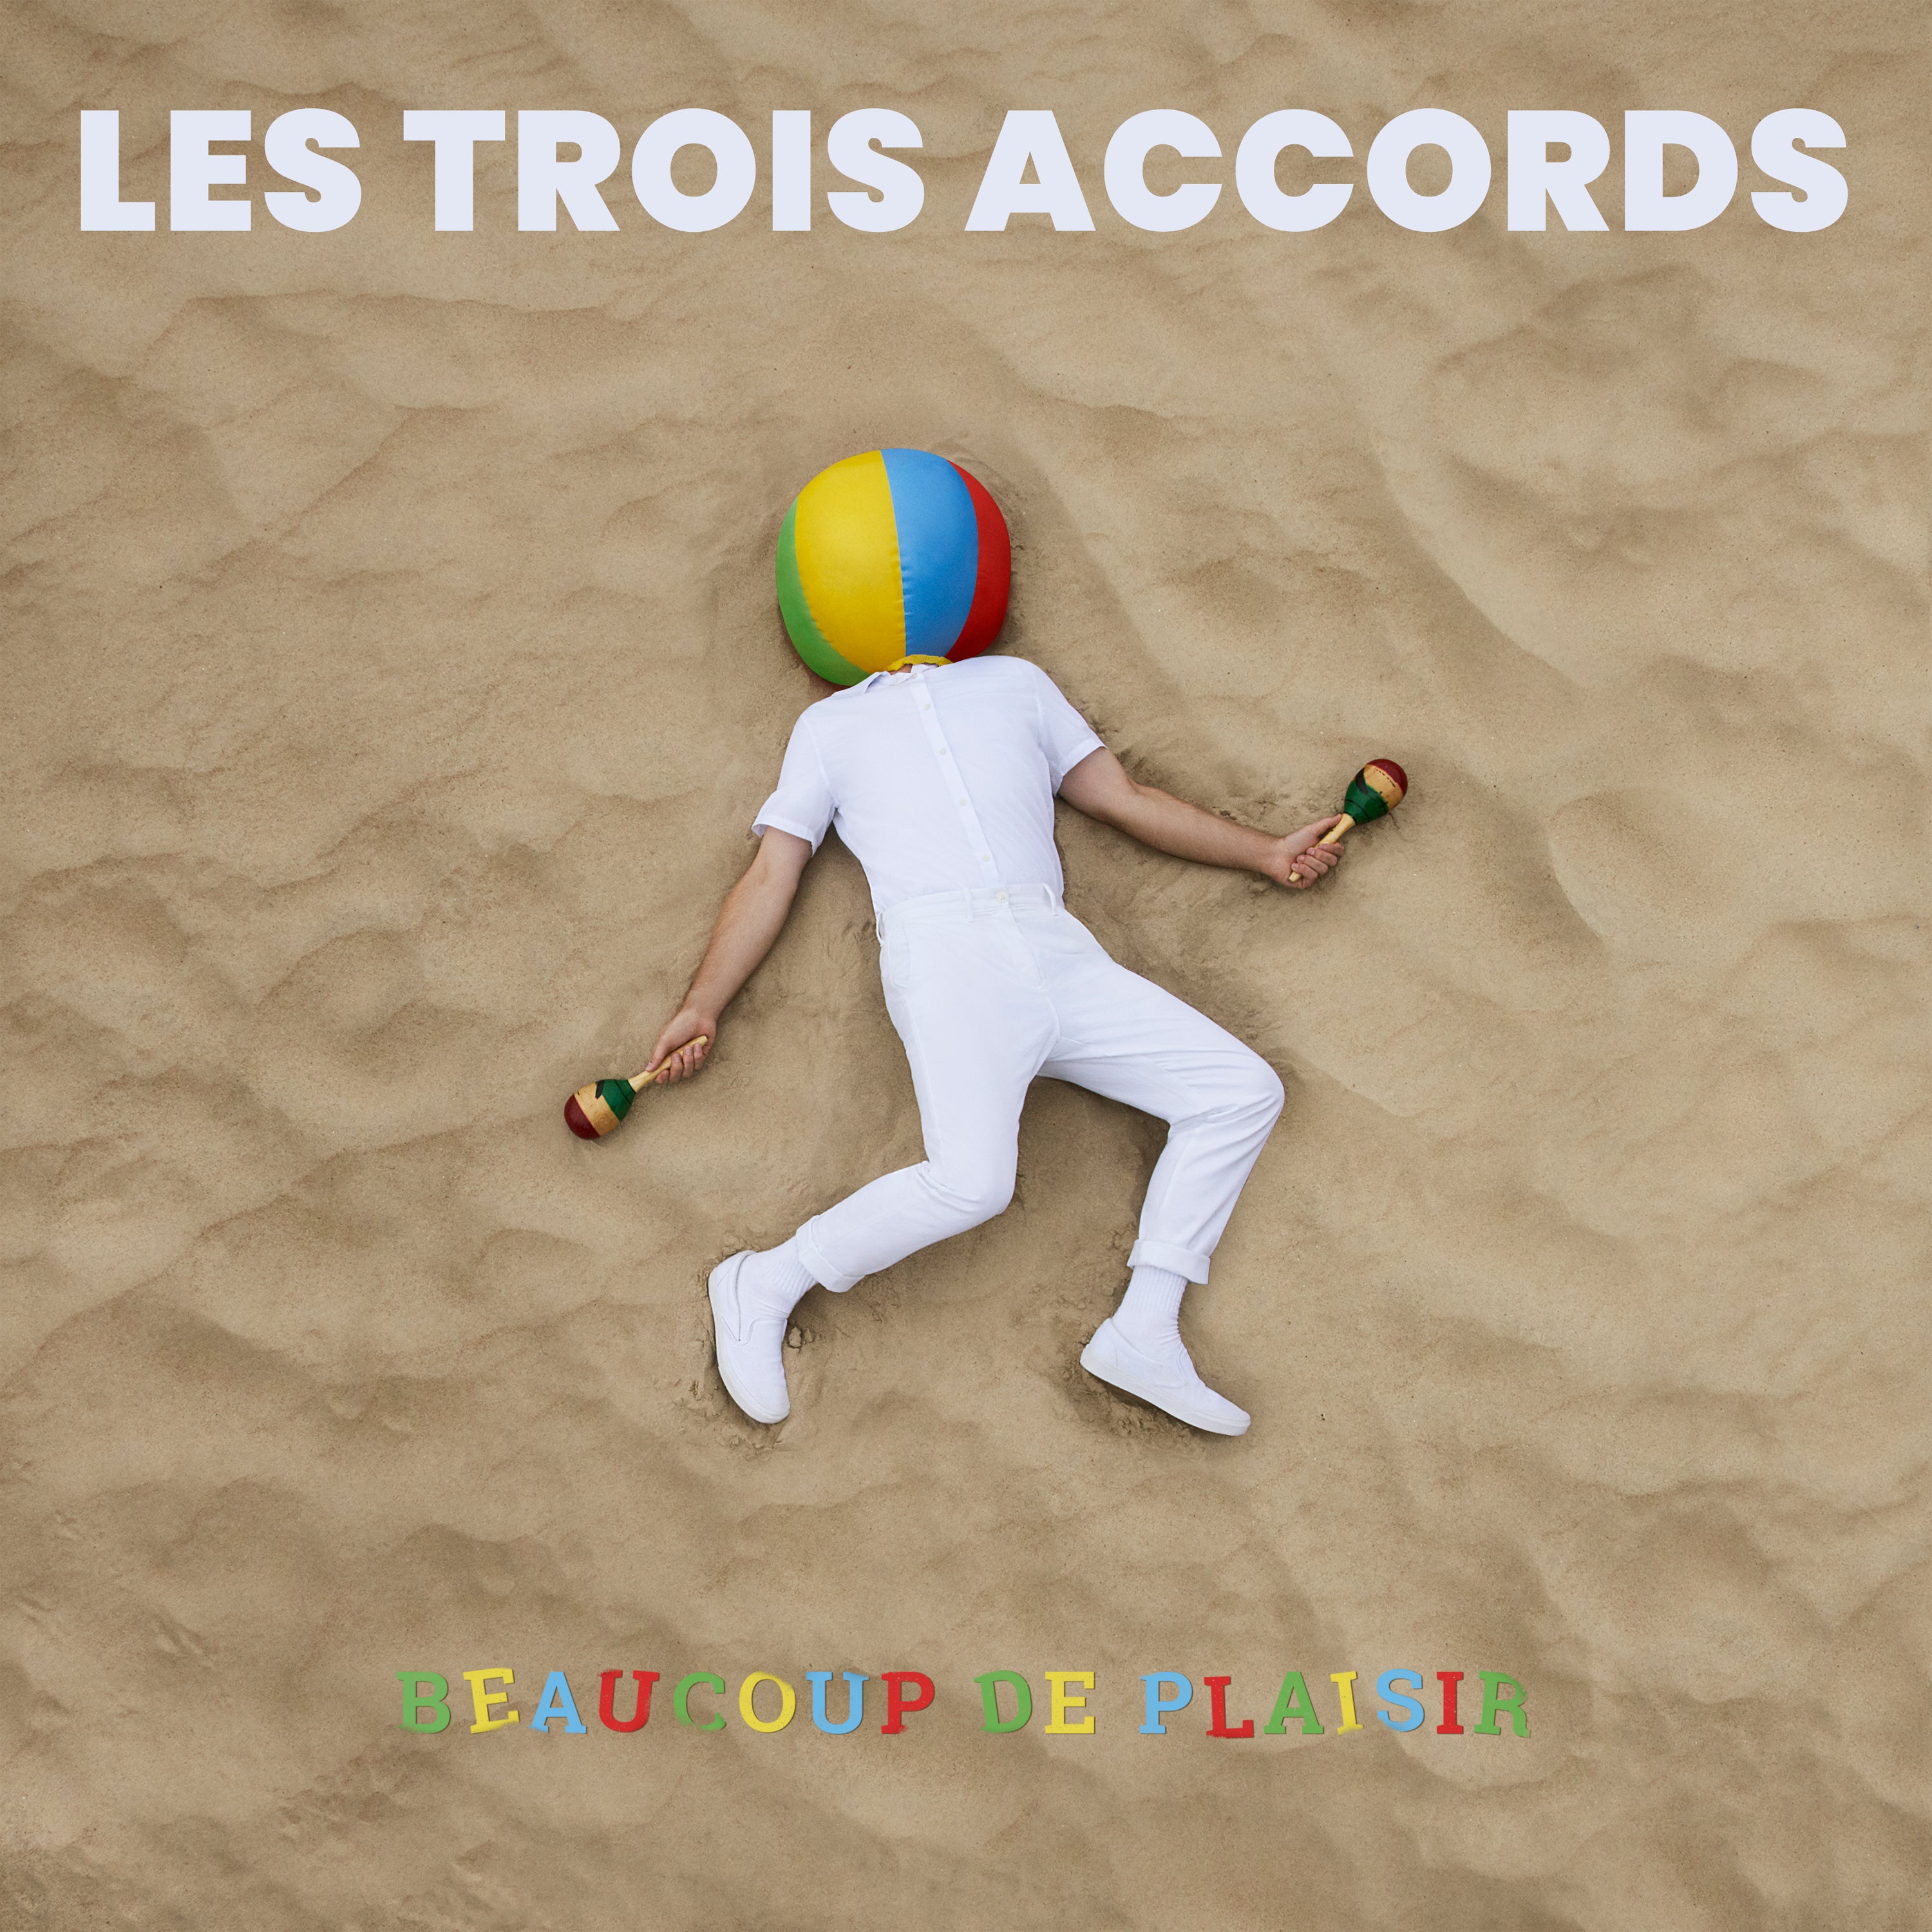 VINYLE - Les Trois Accords - Beaucoup de plaisir - TRILP7391